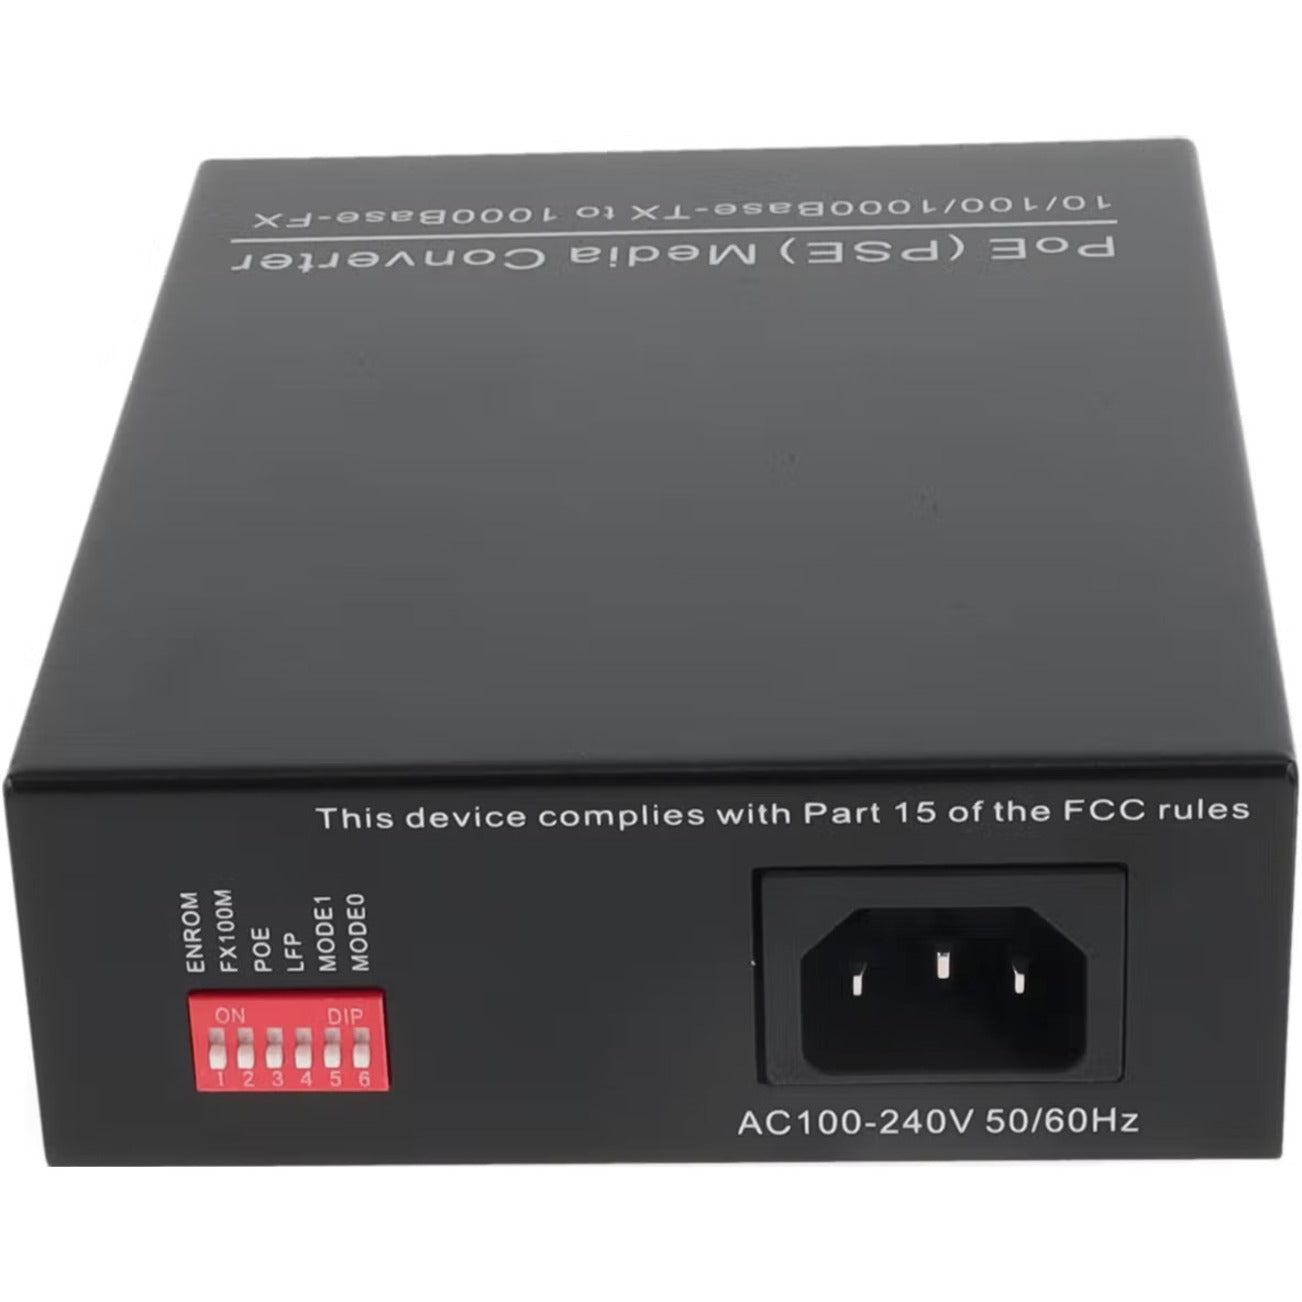 AddOn ADD-GMCP30-SX-5SC 10/100/1000Base-TX(RJ-45) to 1000Base-SX(SC) MMF 850nm 550m POE+ Media Converter, Multi-mode, Gigabit Ethernet